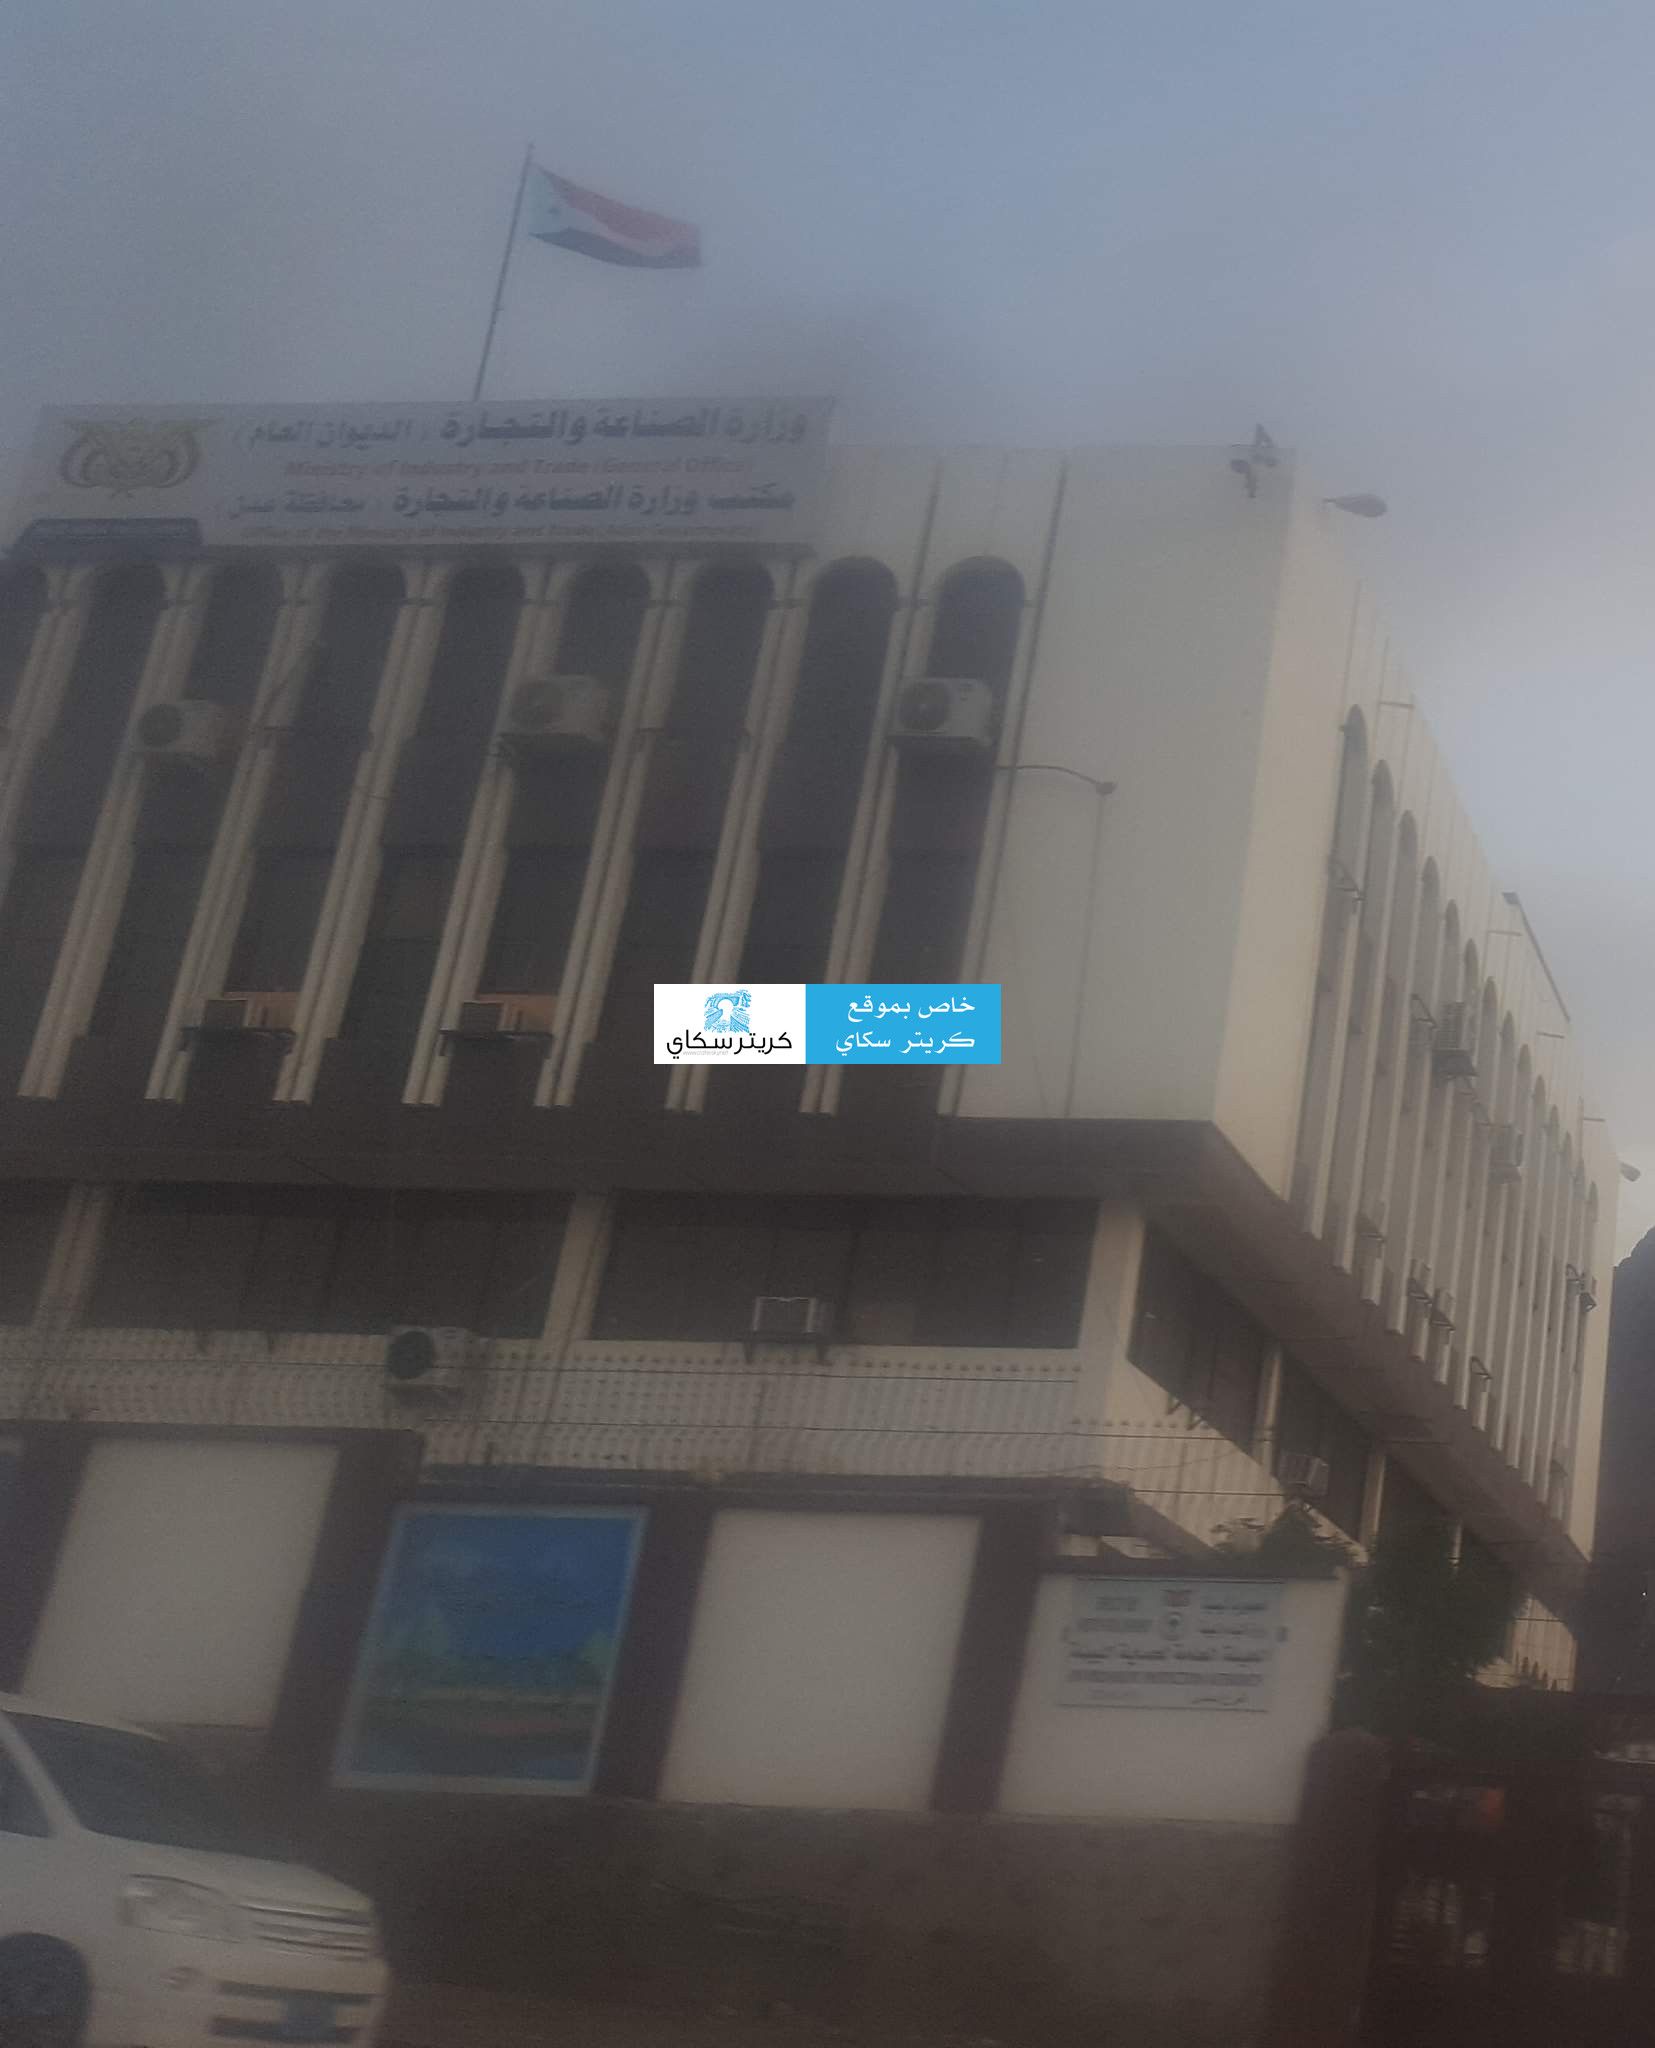 مكتب الصناعة والتجارة يفشل بتنفيذ بنود الاتفاق مع الافران في عدن